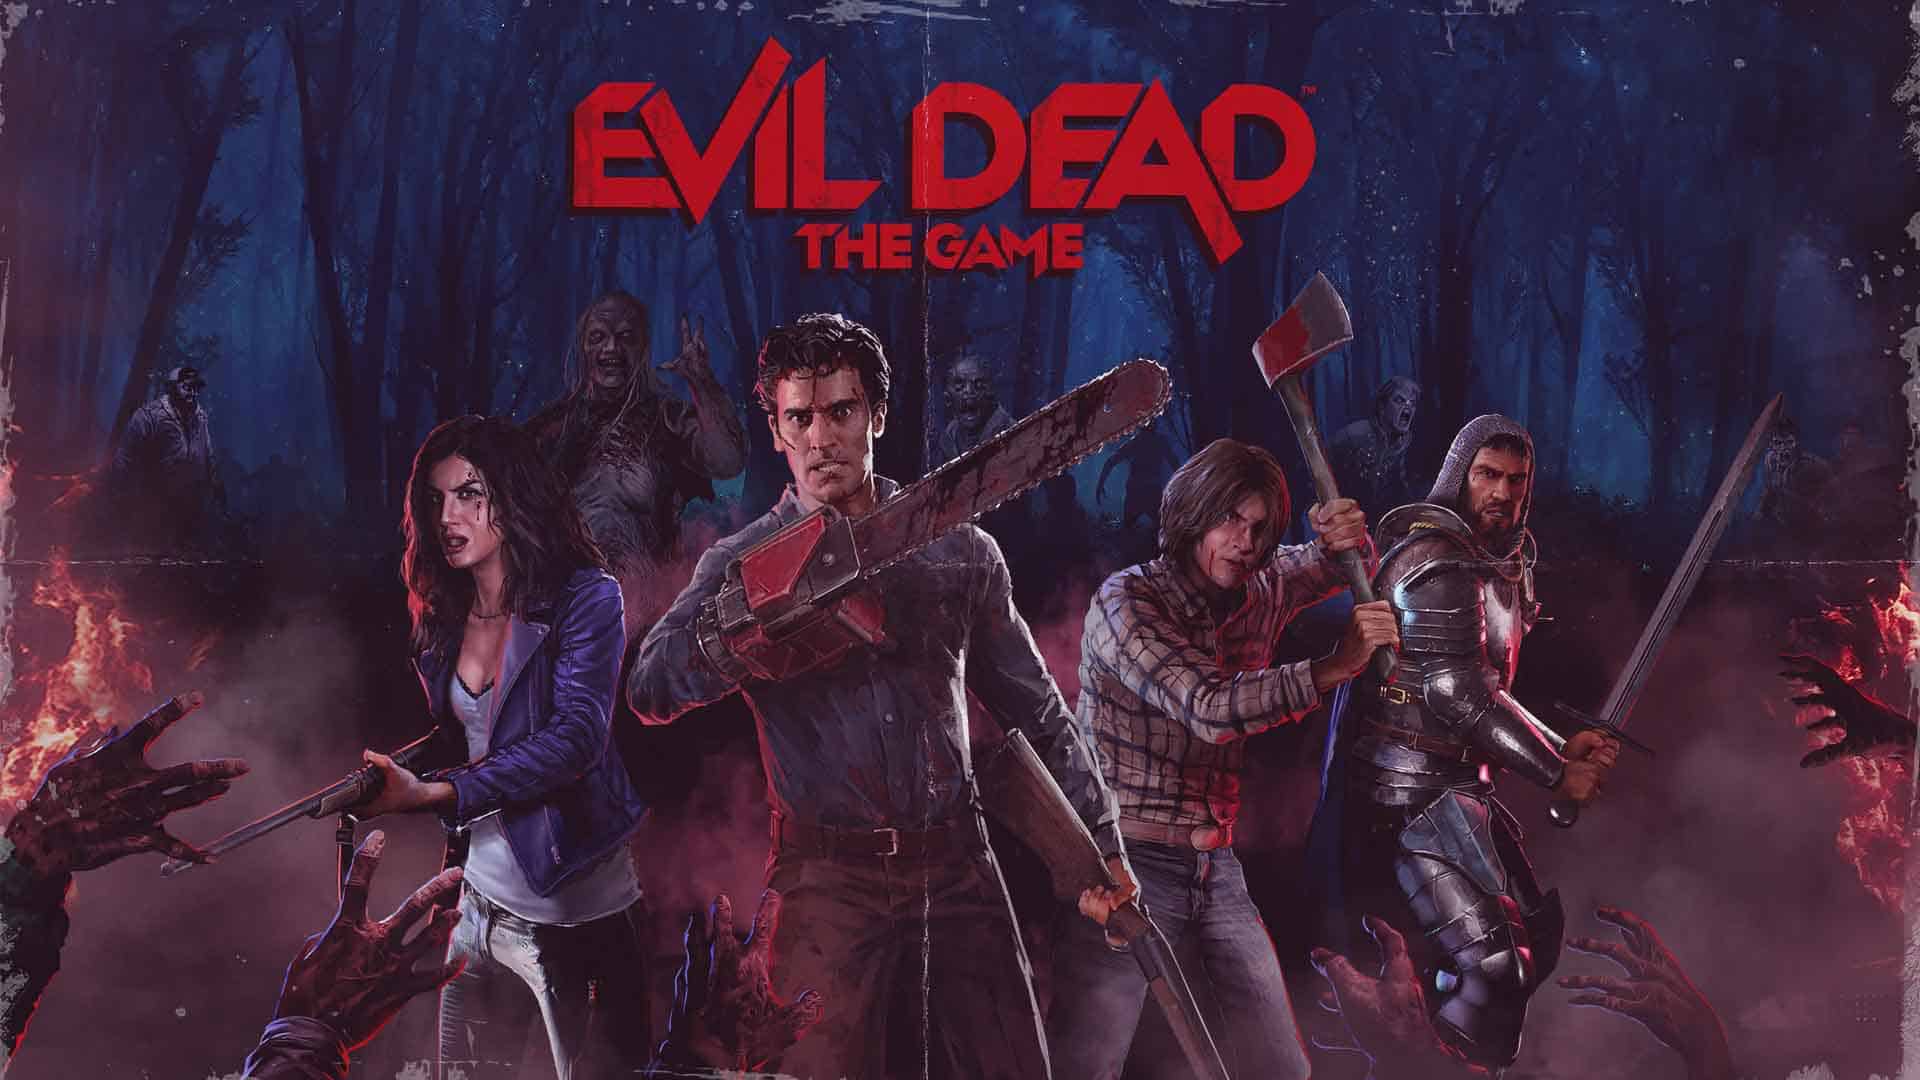 Evil Dead Regeneration - PS2 - Review